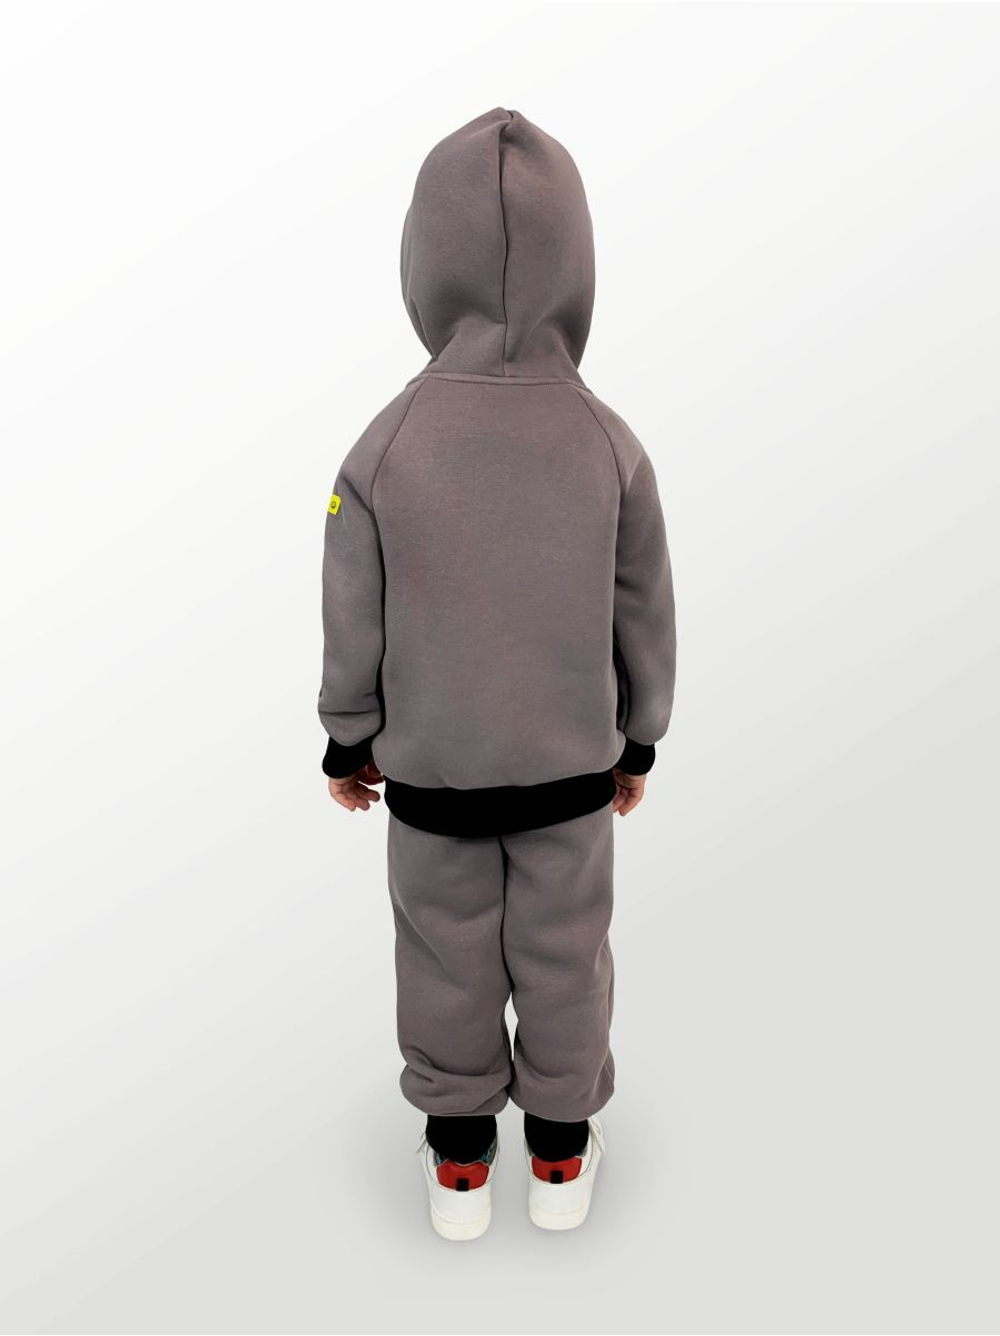 Худи для детей, модель №5, утепленный, рост 104 см, серый